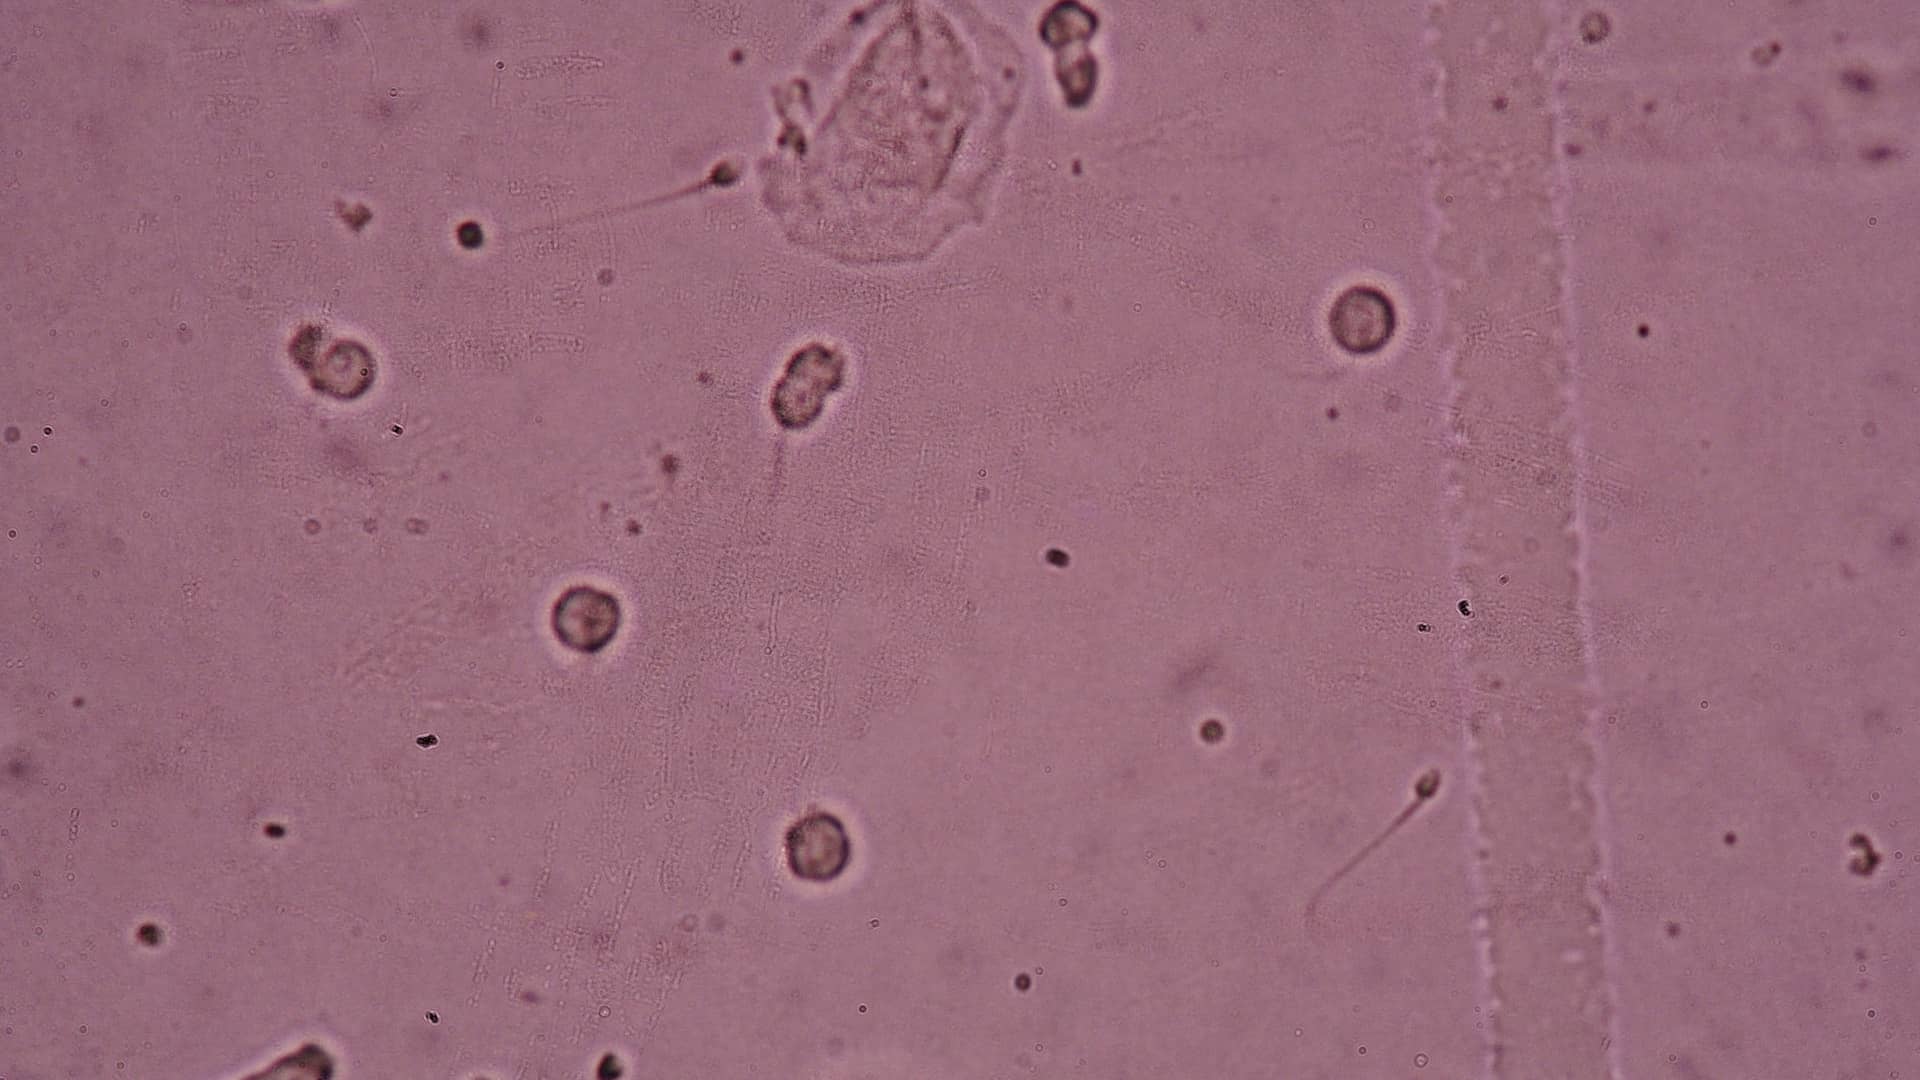 Muestra de semen vista en el microscopio que representa la criptozoospermia que es un ejemplo de esterilidad masculina